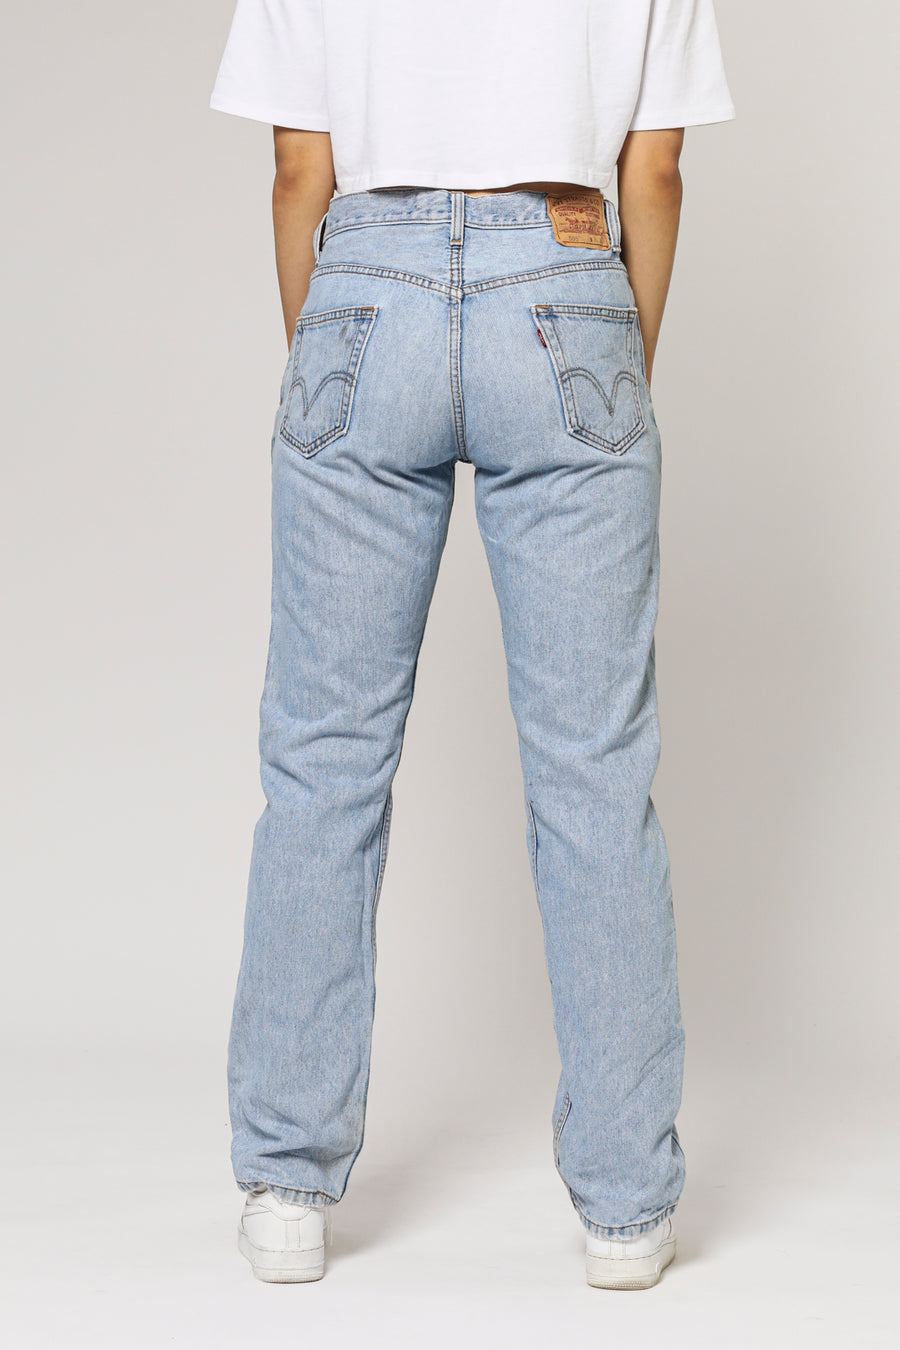 Vintage Levi's Jeans - W34